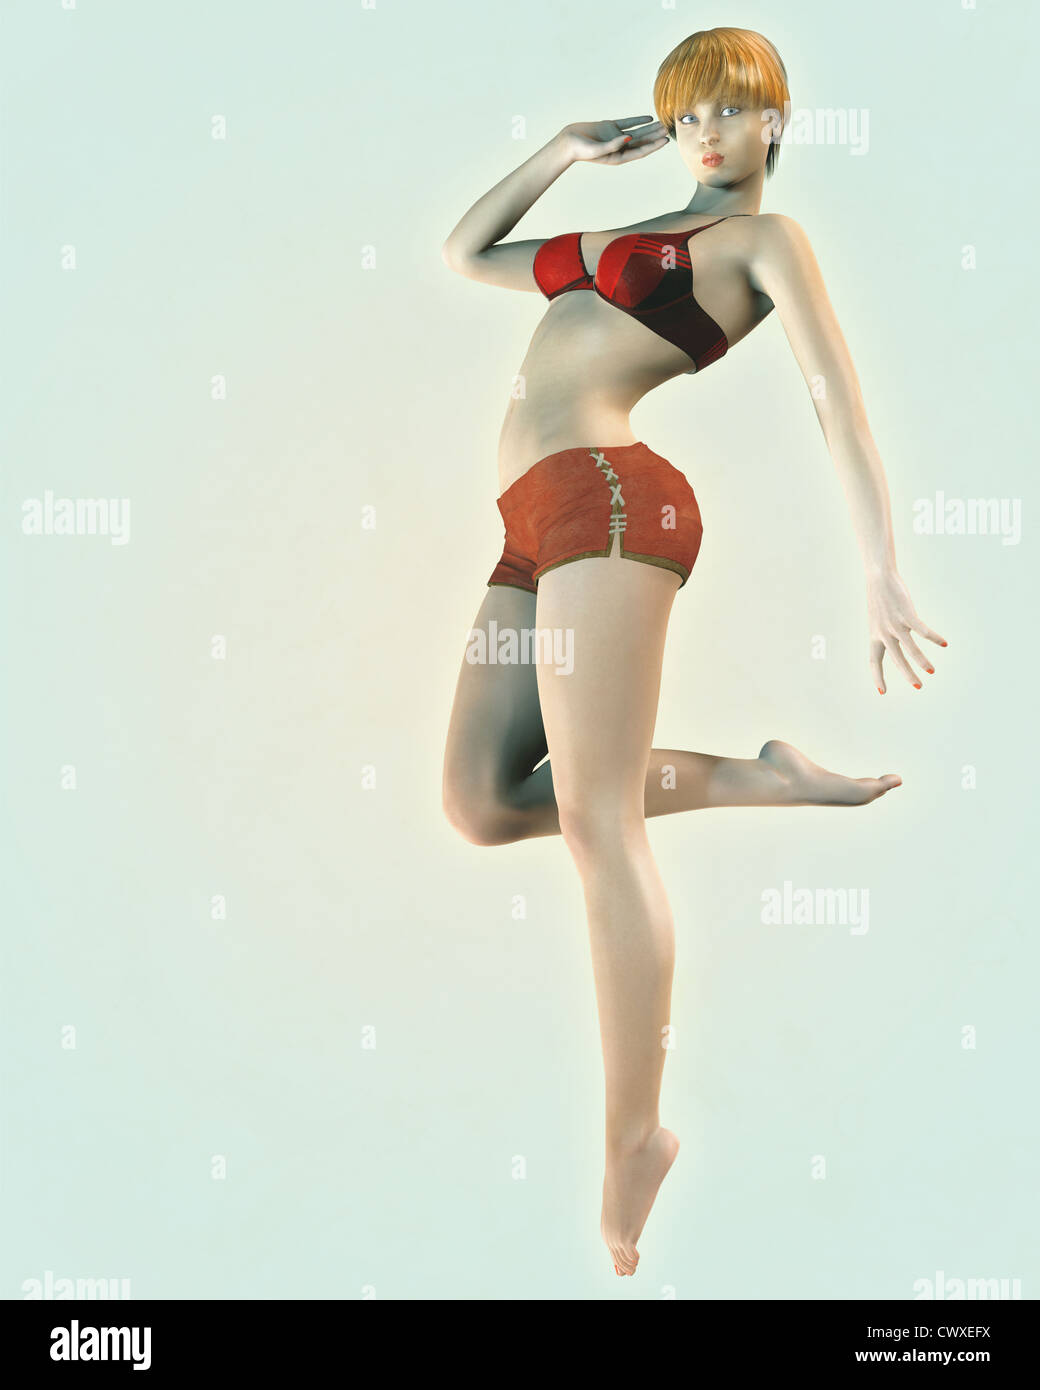 Ilustración de un estilo retro vintage o pin-up modelo de sexy chica en bikini rojo arriba y vintage shorts. Foto de stock